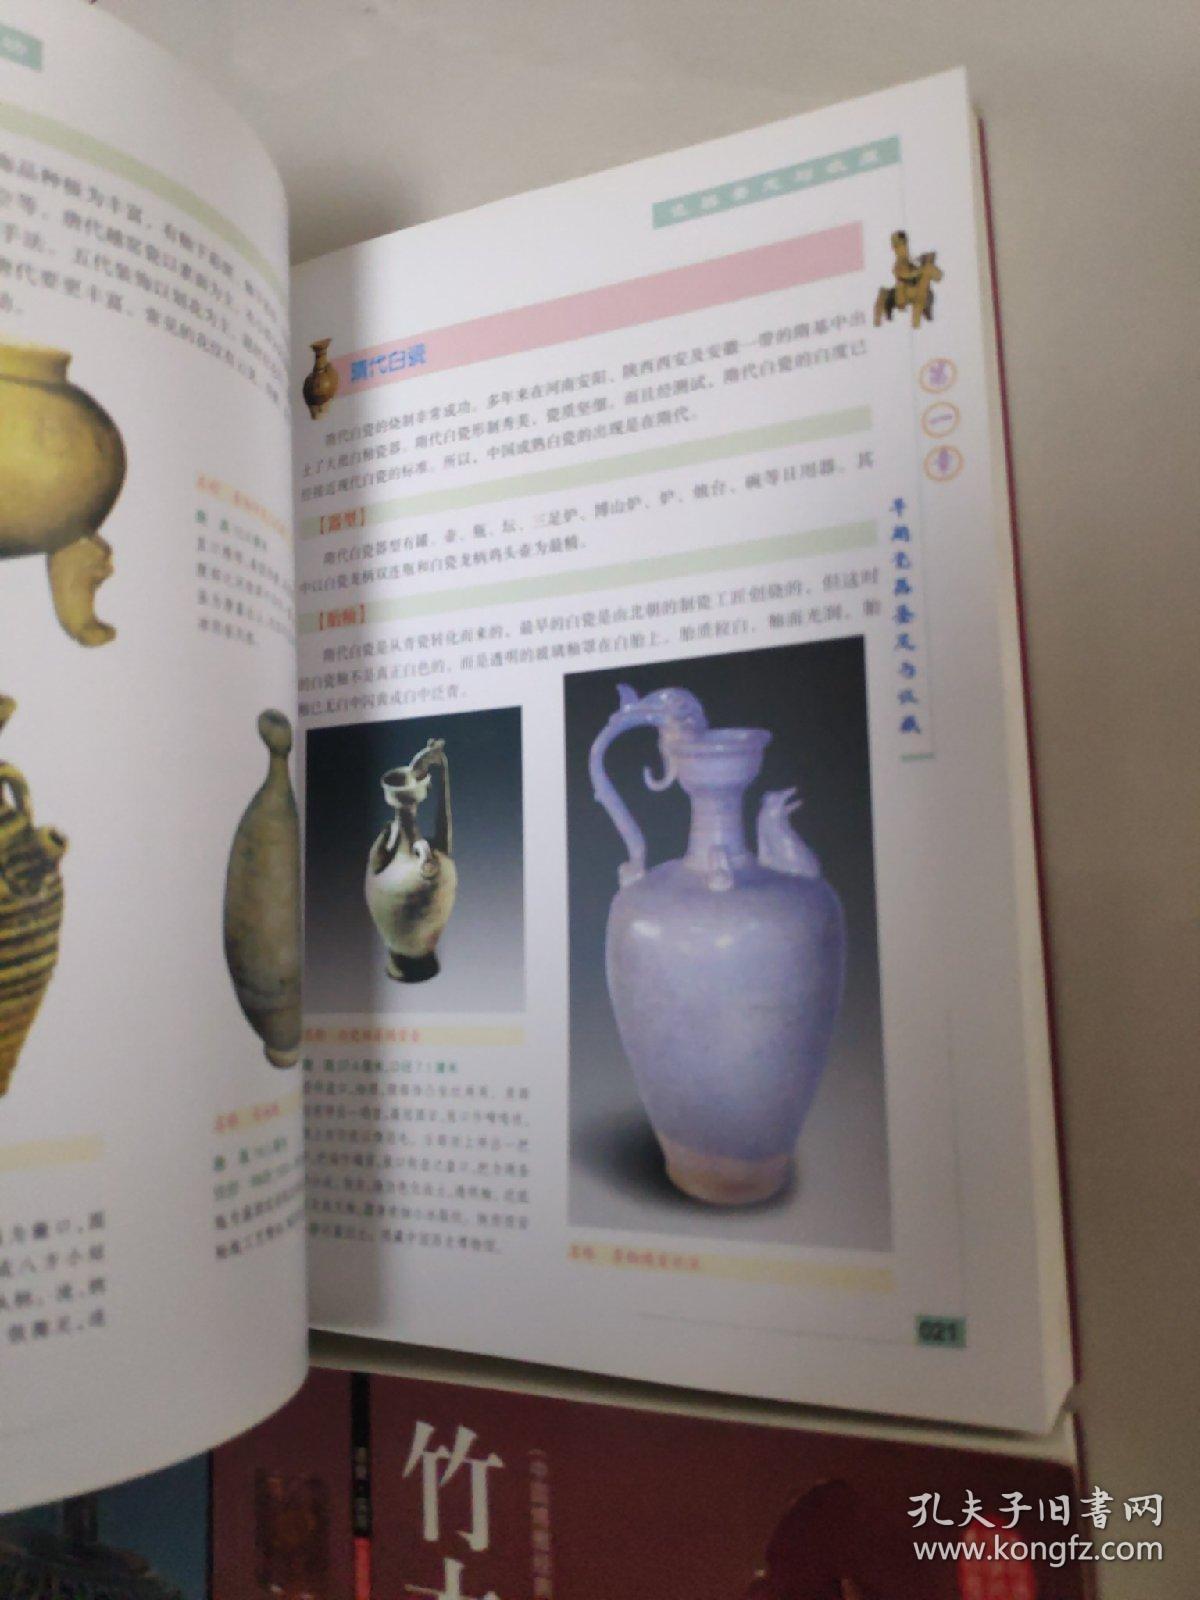 青花瓷鉴定与收藏
瓷器鉴定与收藏
青铜器鉴定与收藏
竹木牙角鉴定与收藏